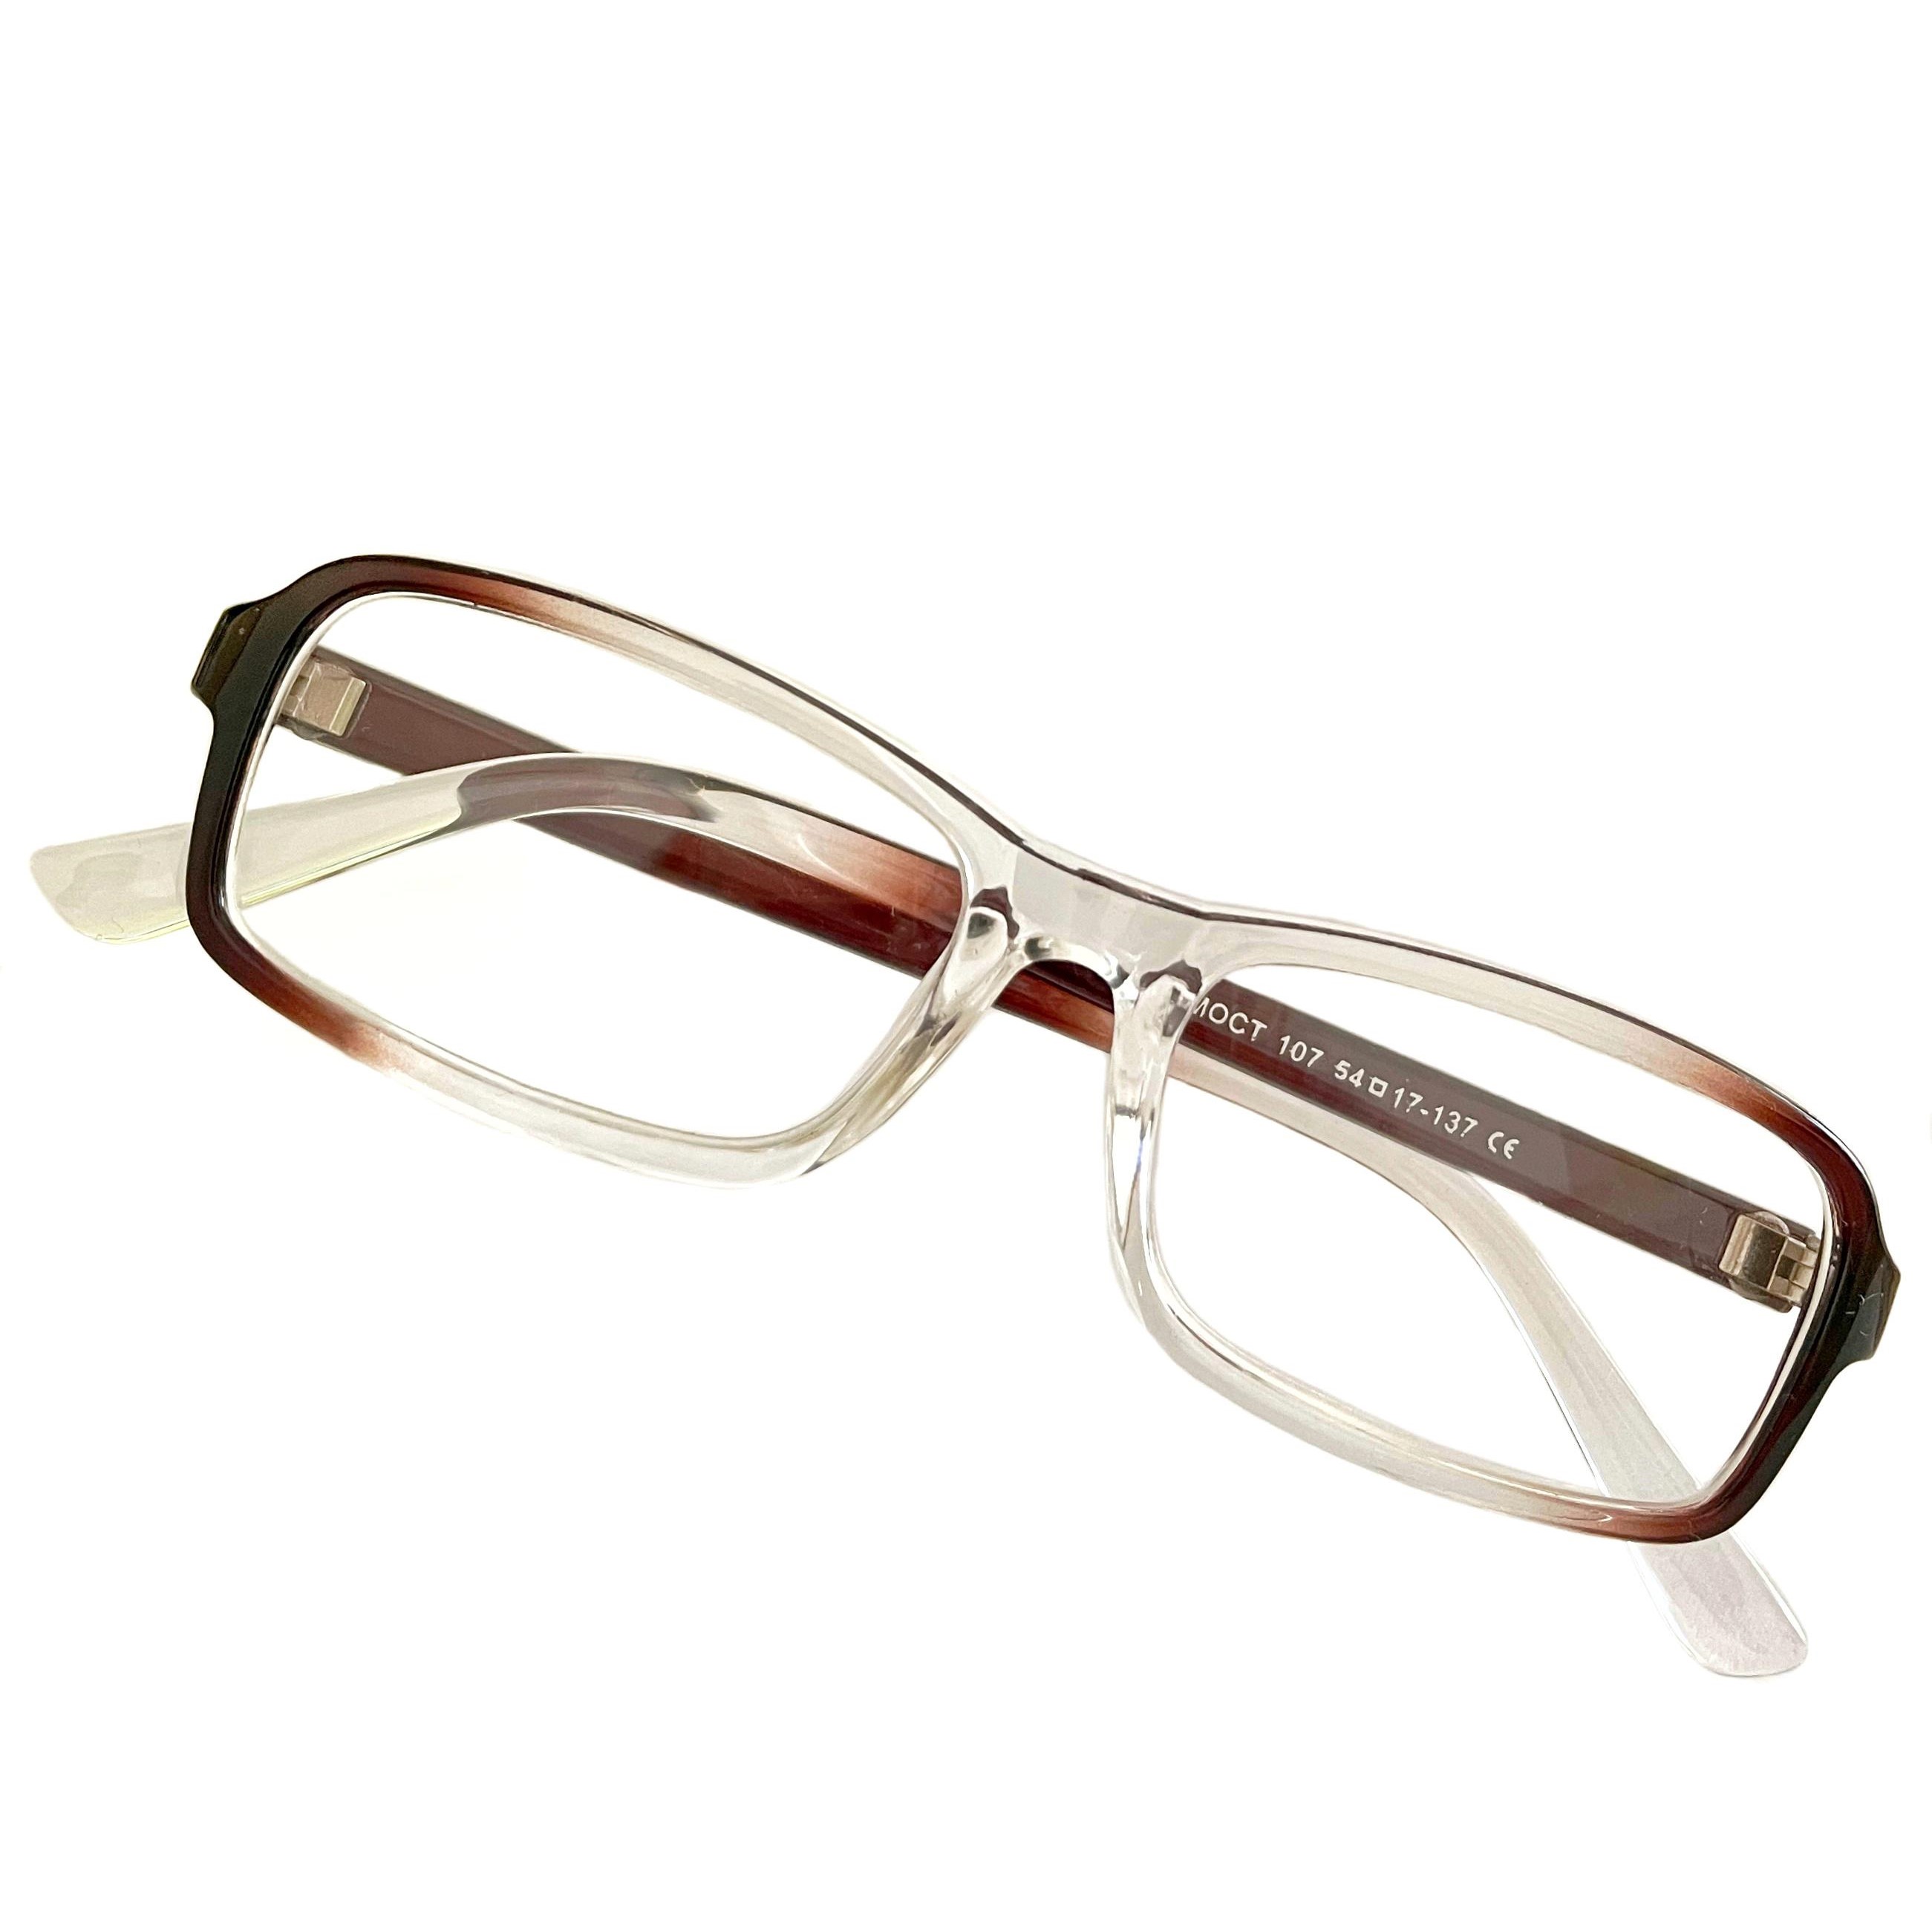 Купить Очки MOCT для зрения, с диоптриями +1, 5 корригирующие для чтения